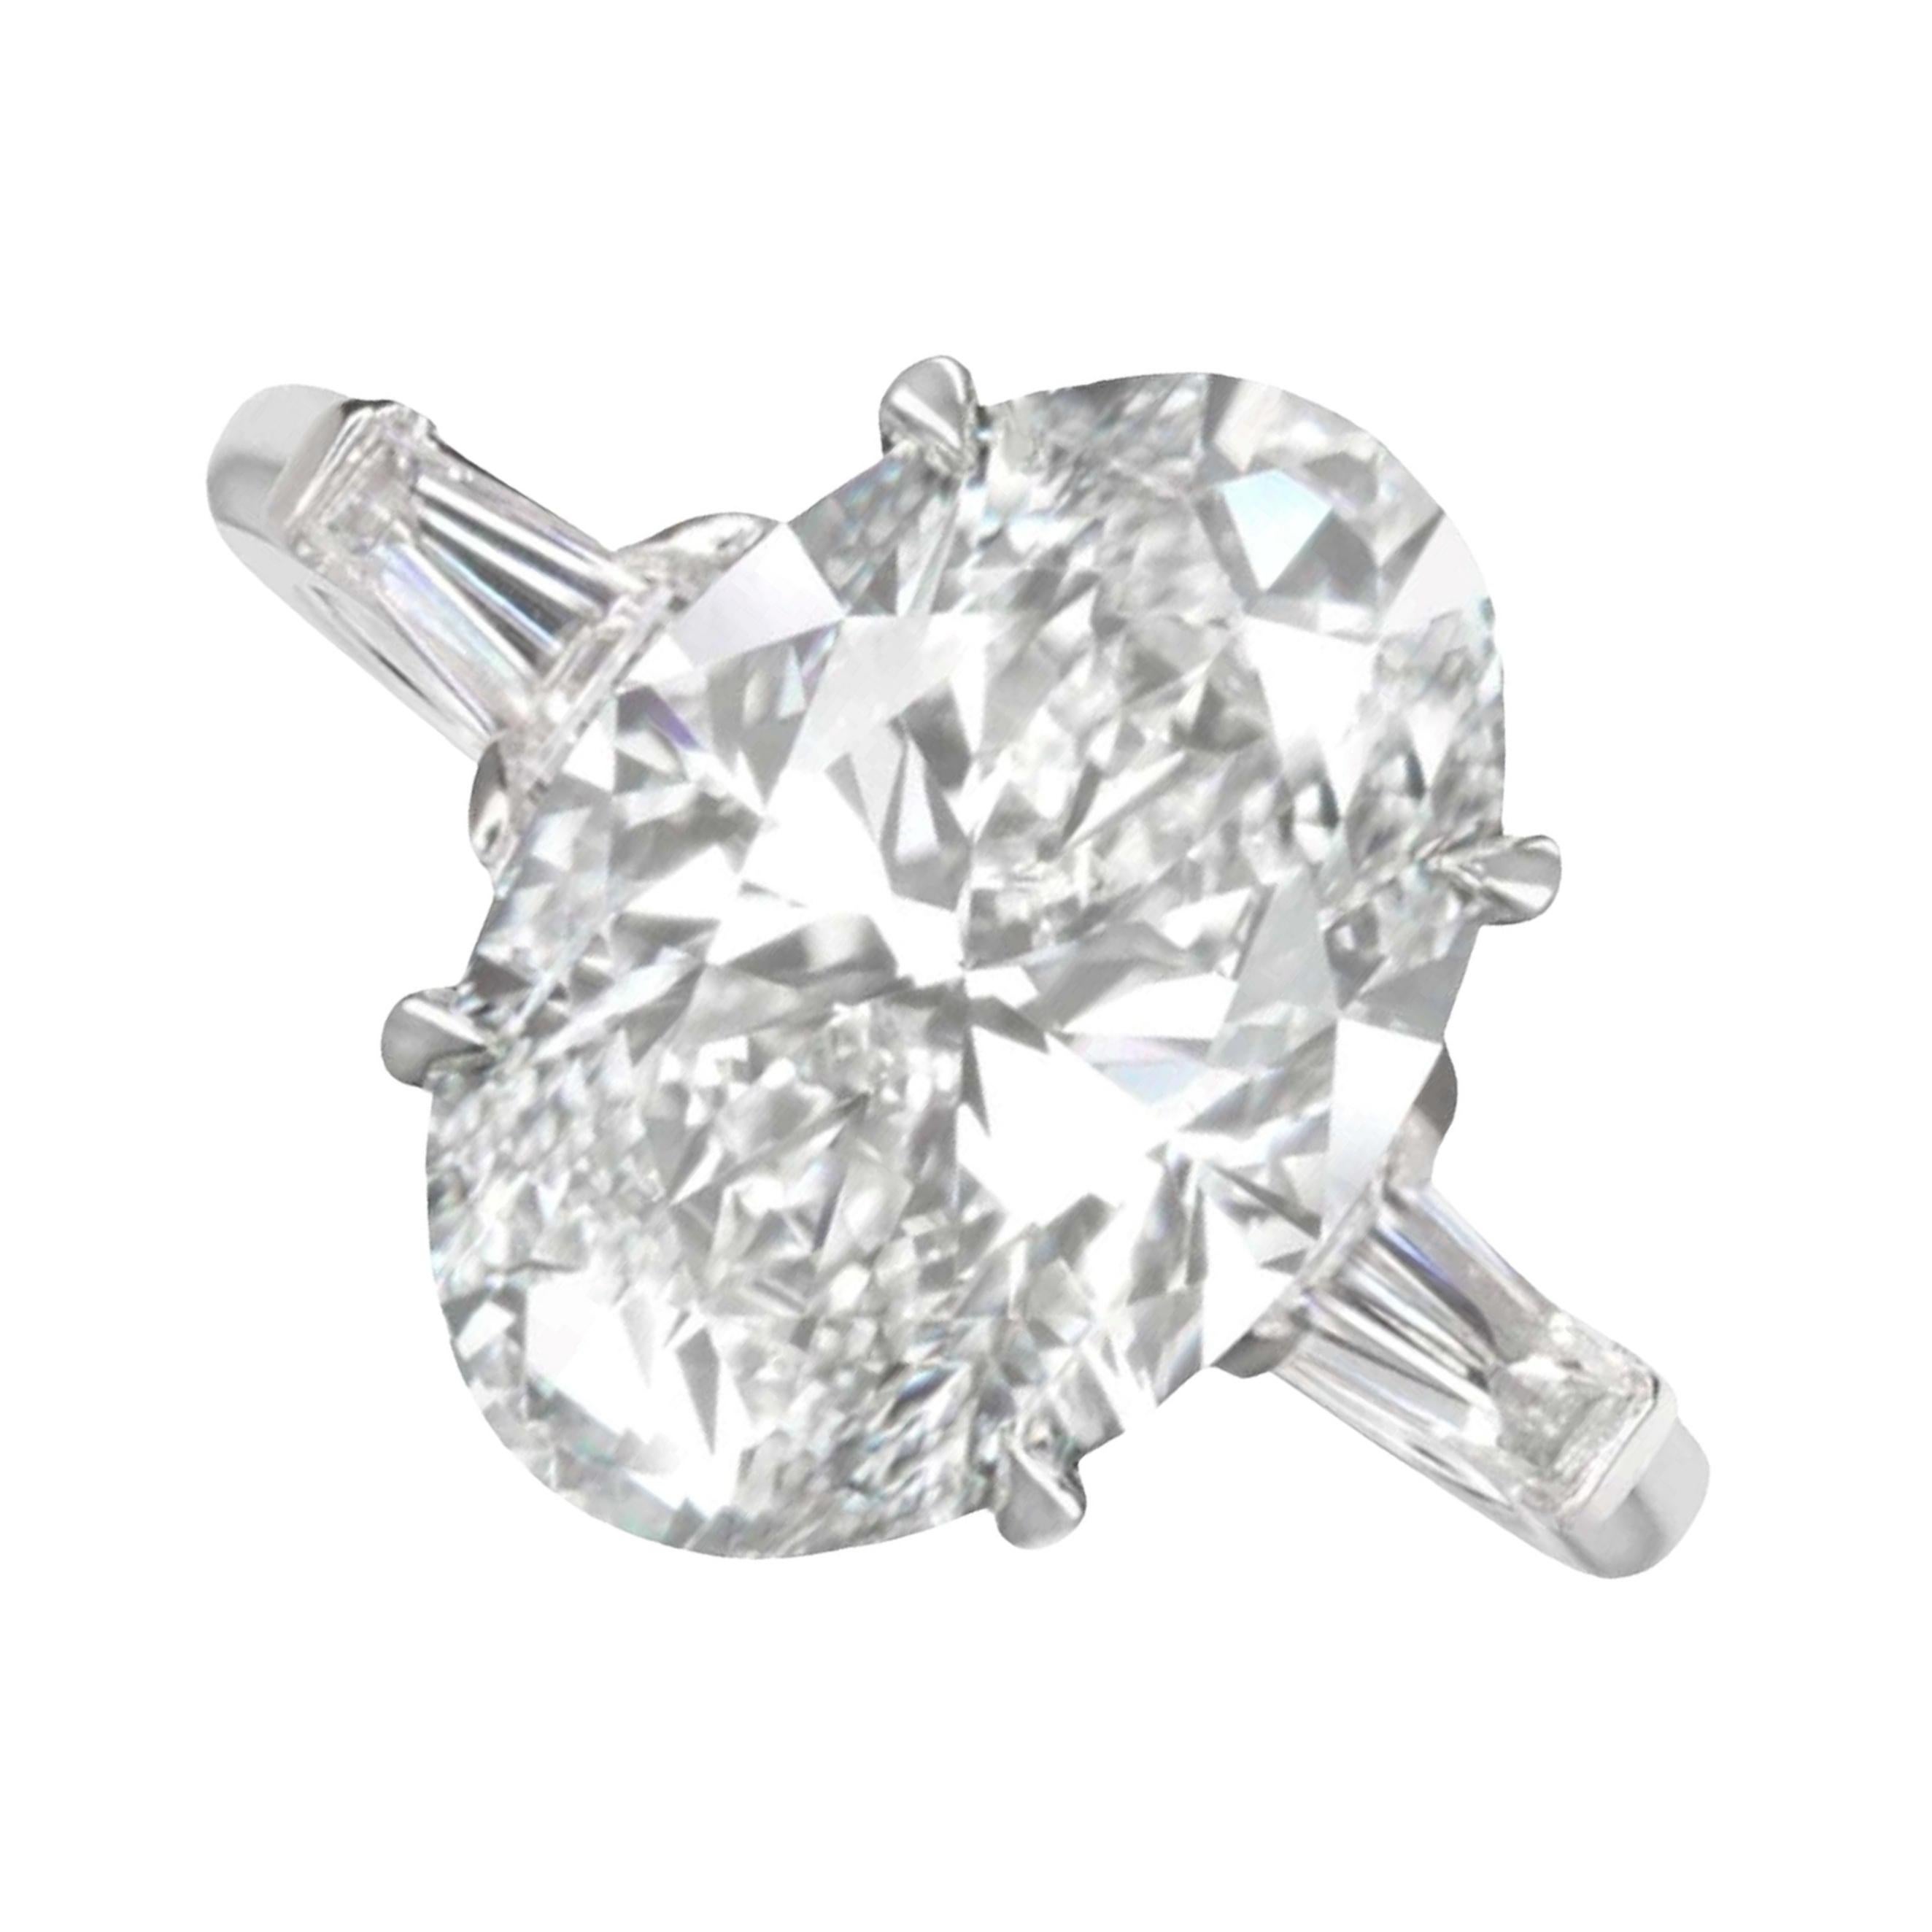 4 carat diamond ring oval cut